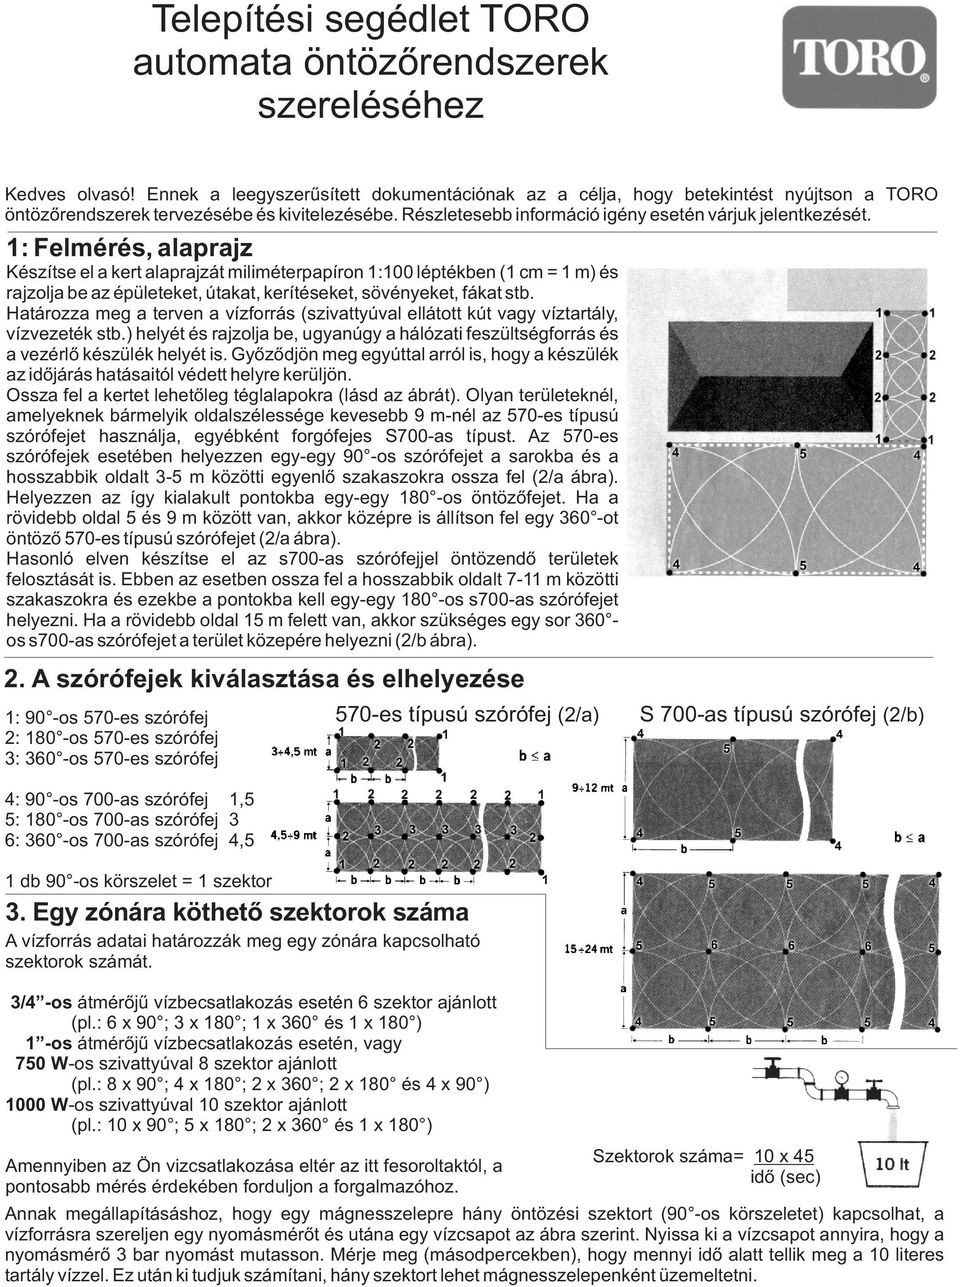 Telepítési segédlet TORO automata öntözõrendszerek szereléséhez - PDF  Ingyenes letöltés